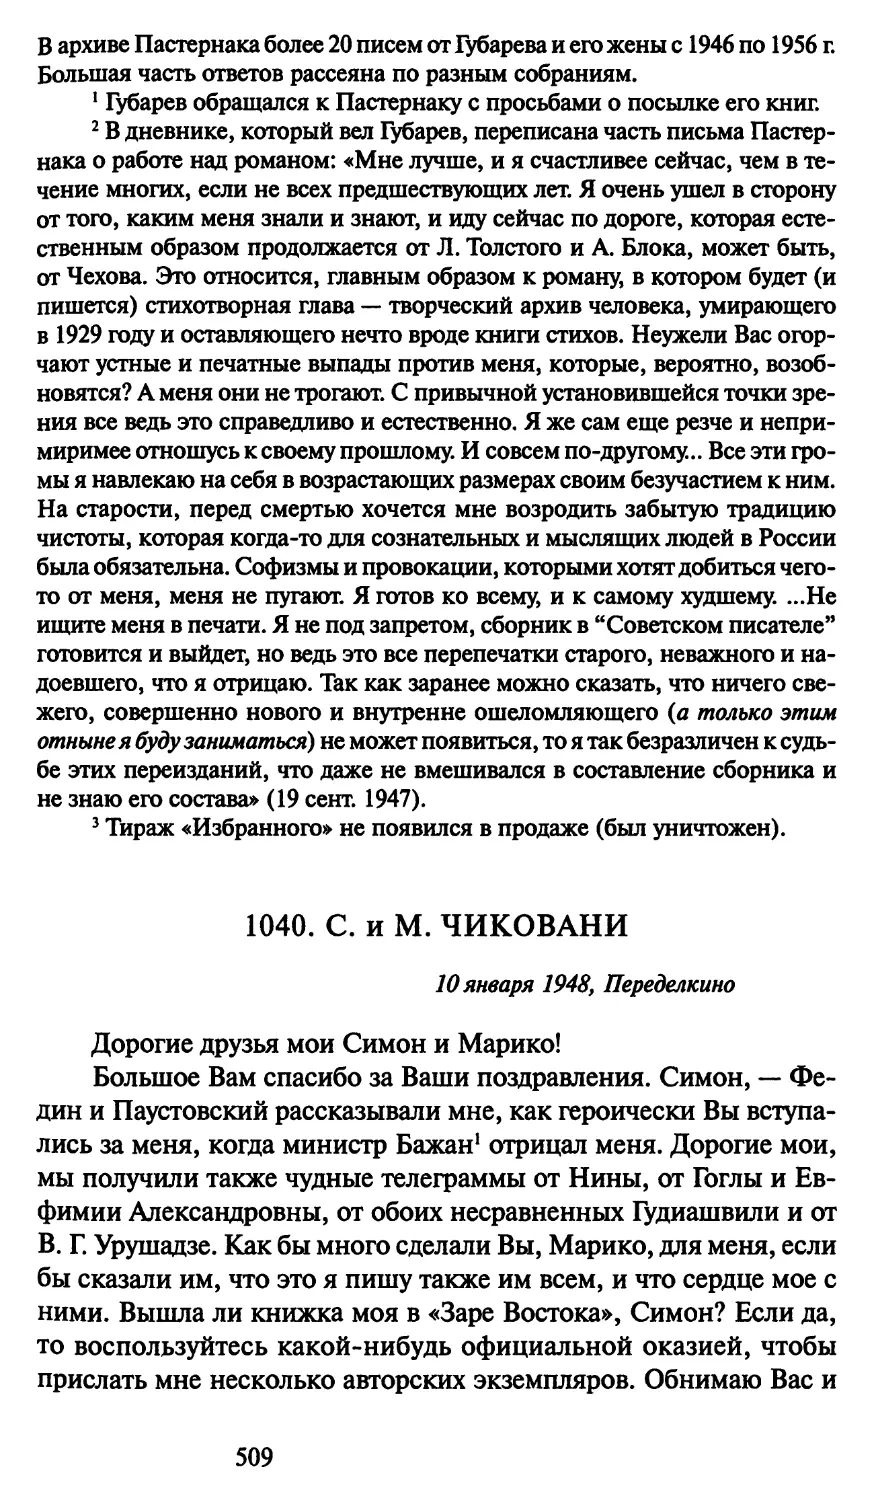 1040. С. и М. Чиковани 10 января 1948